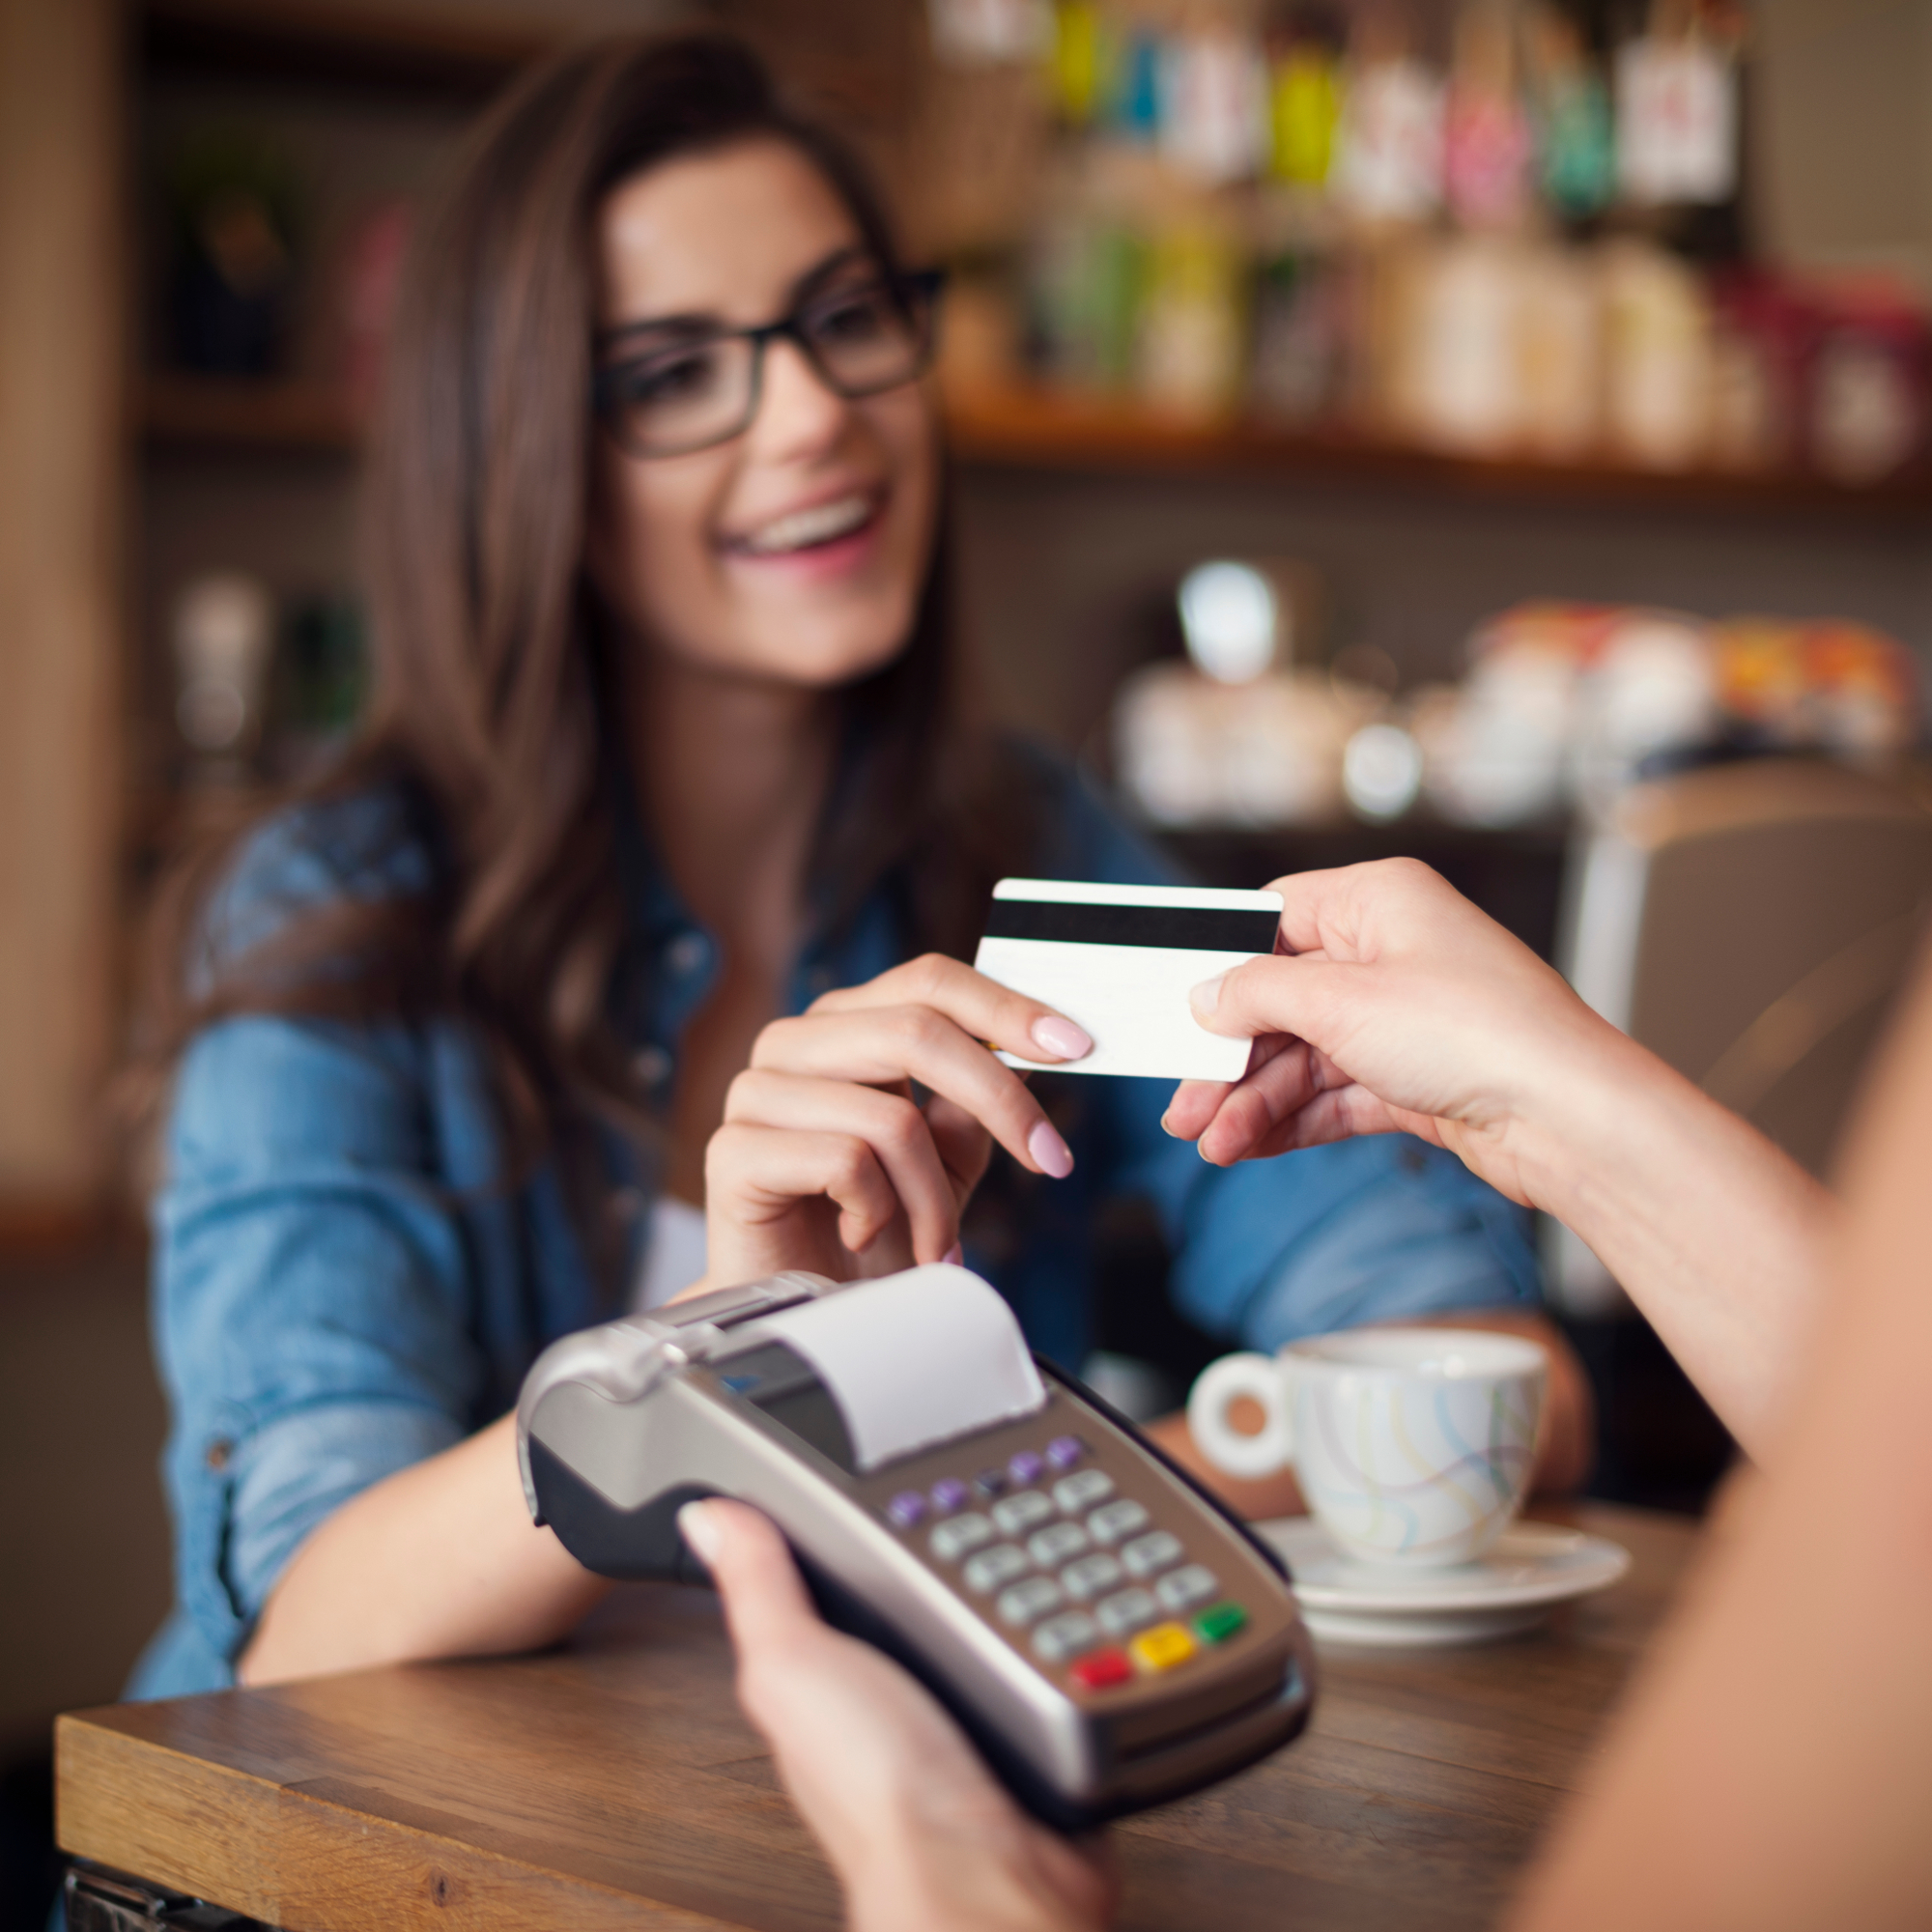 mulher sorrindo entregando cartão de crédito/débito sorrindo; mão esquerda de outra pessoa segurando máquina de cartão e mão direita pegando o cartão da mulher